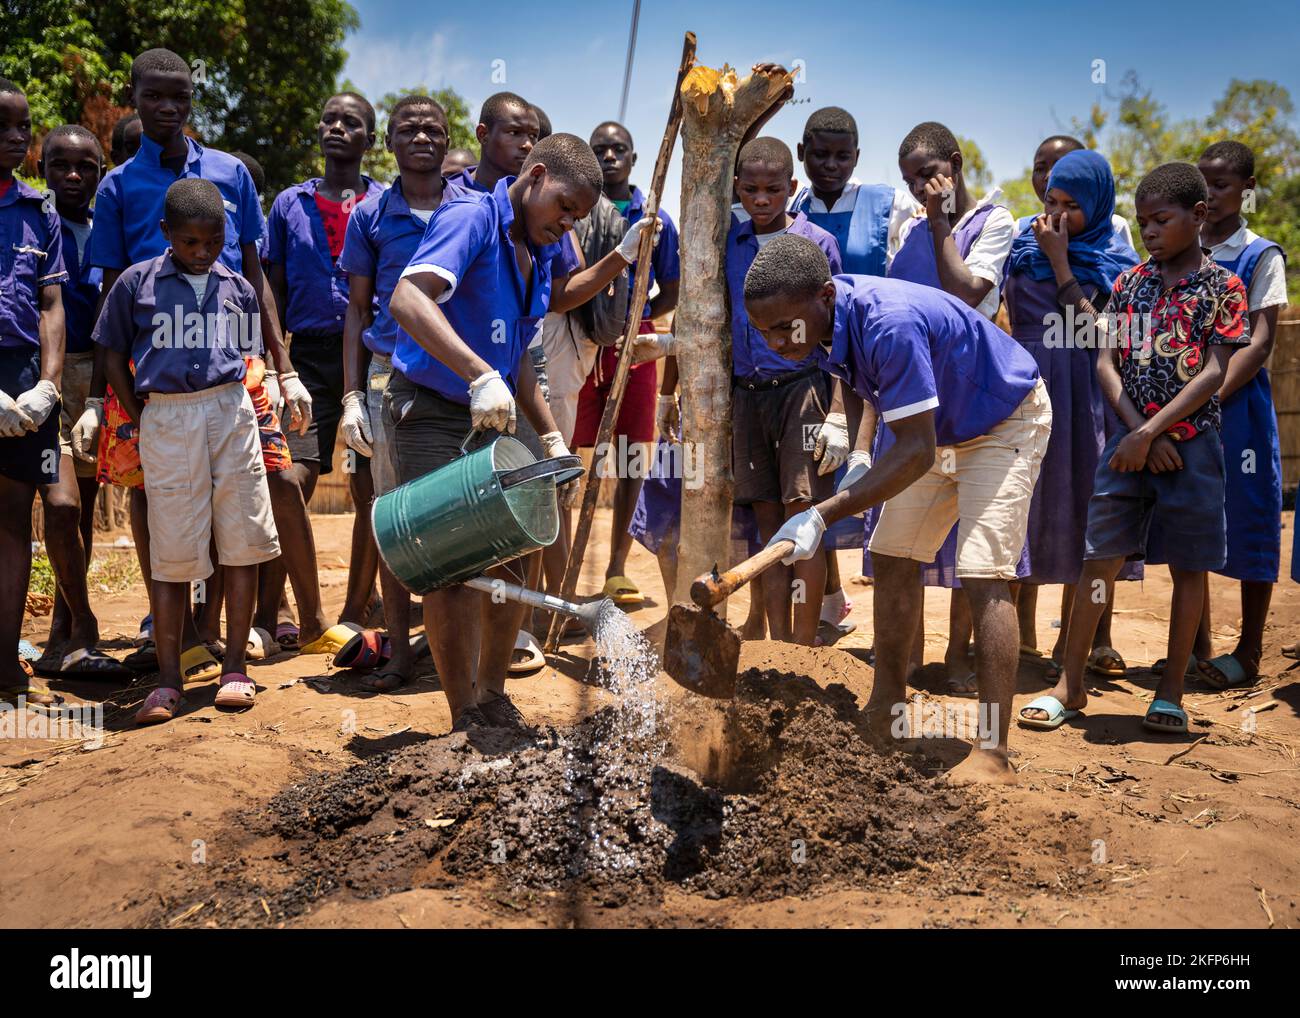 Au Malawi, les élèves du secondaire montrent comment planter un arbre dans le cadre de leur club de conservation de l'environnement Banque D'Images